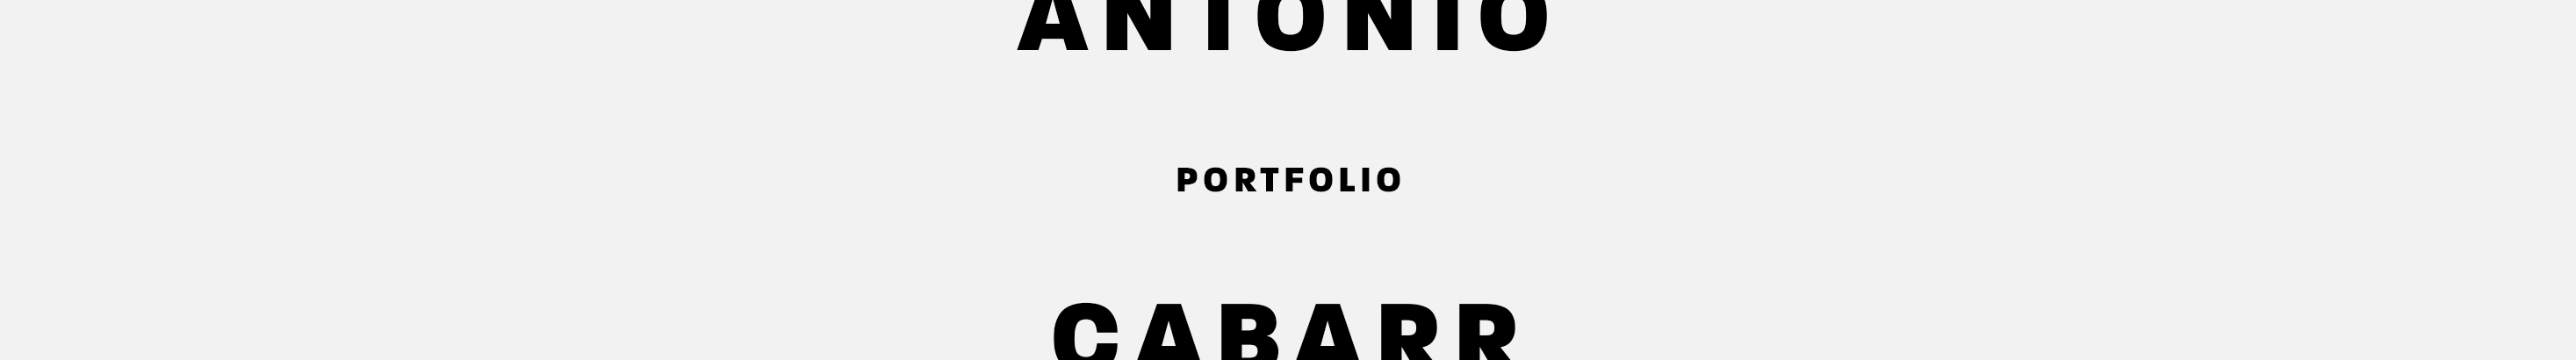 Banner de perfil de Antonio Cabarr